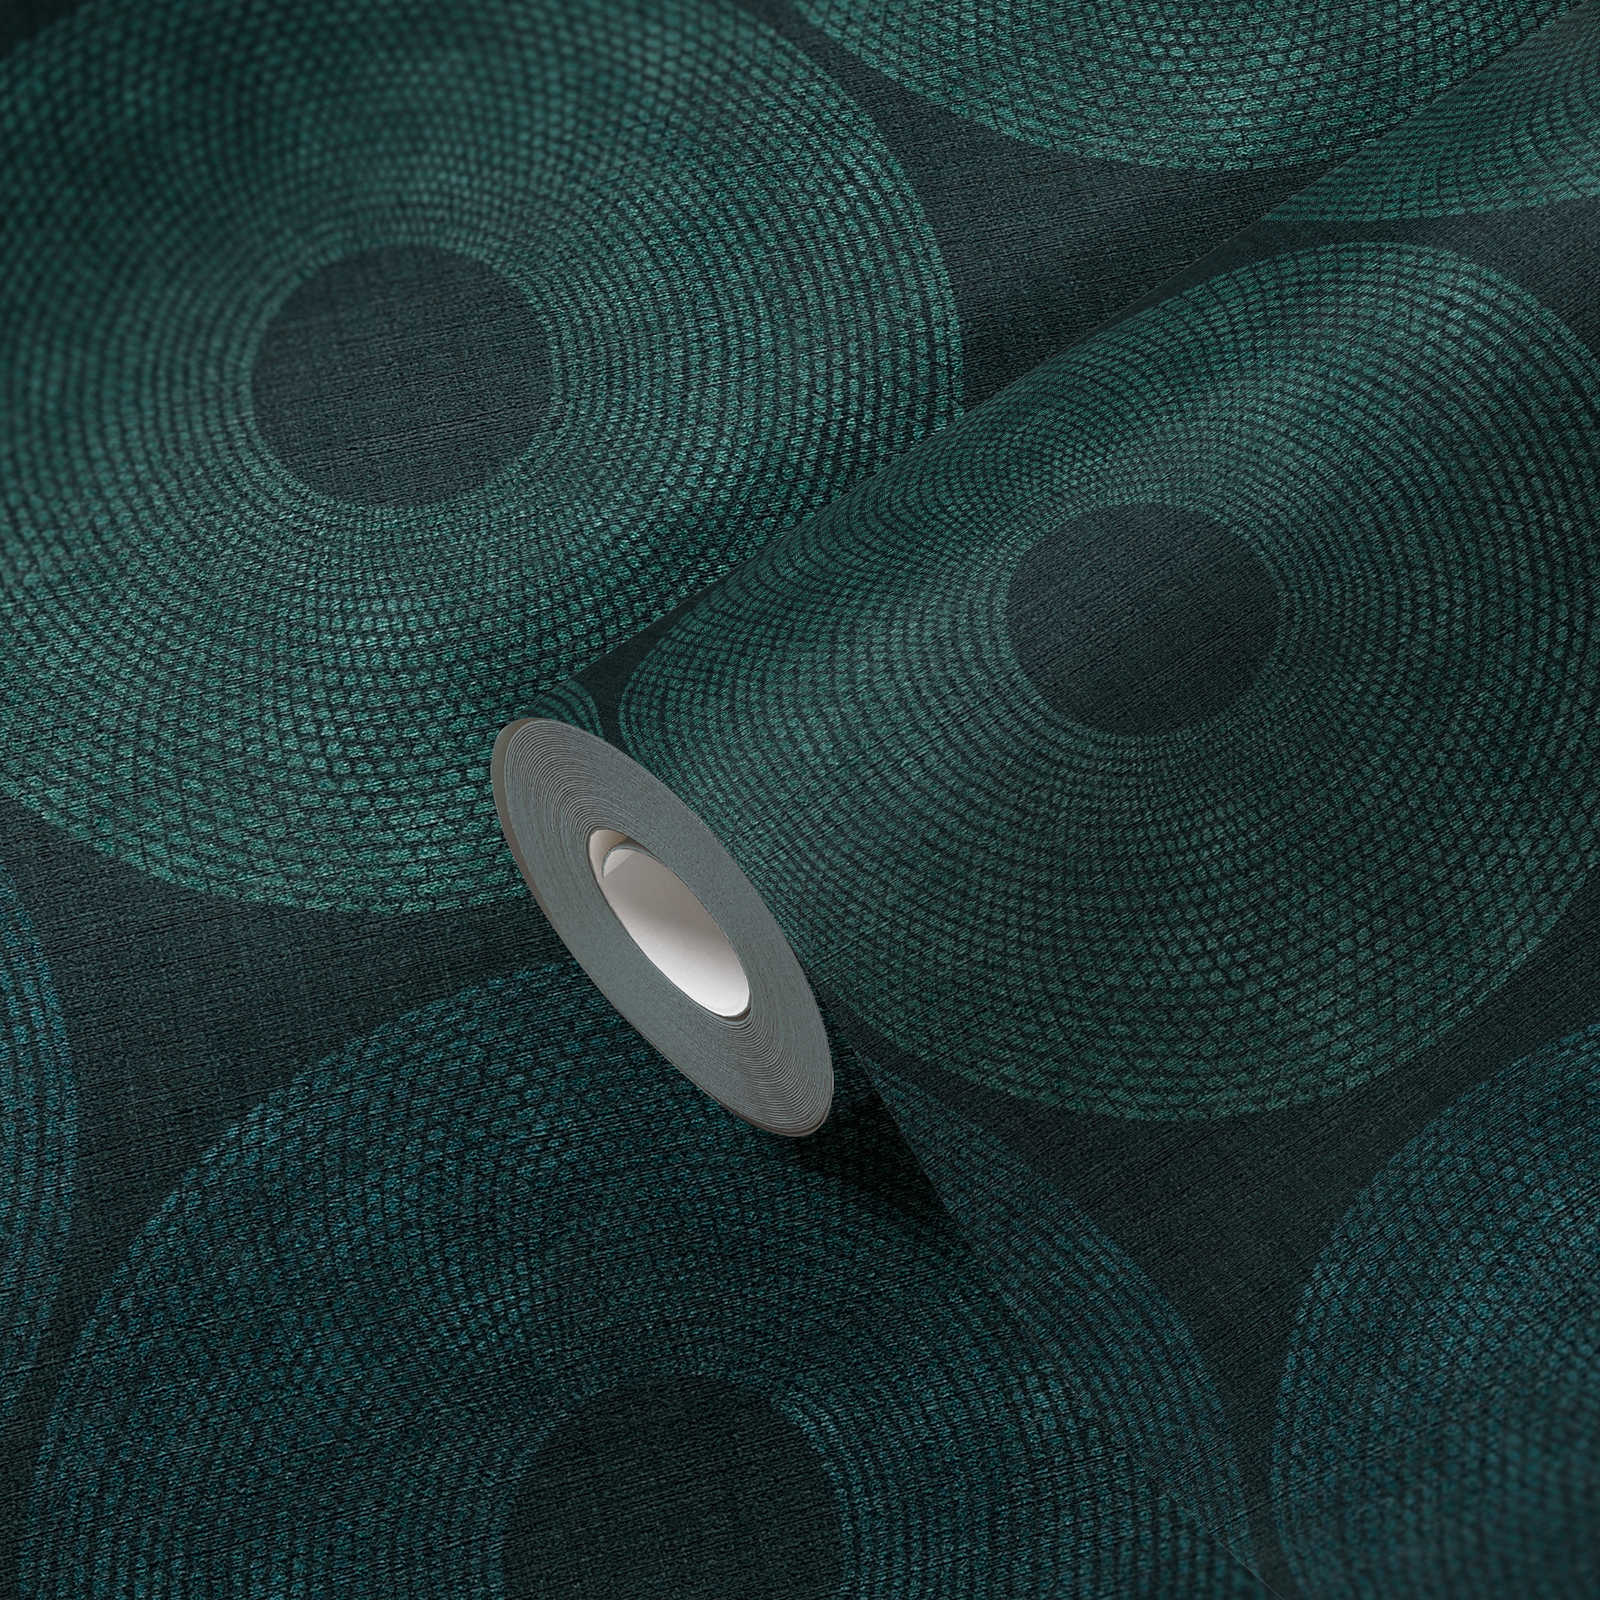             Ethno behang cirkels met structuur design - groen, metallic
        